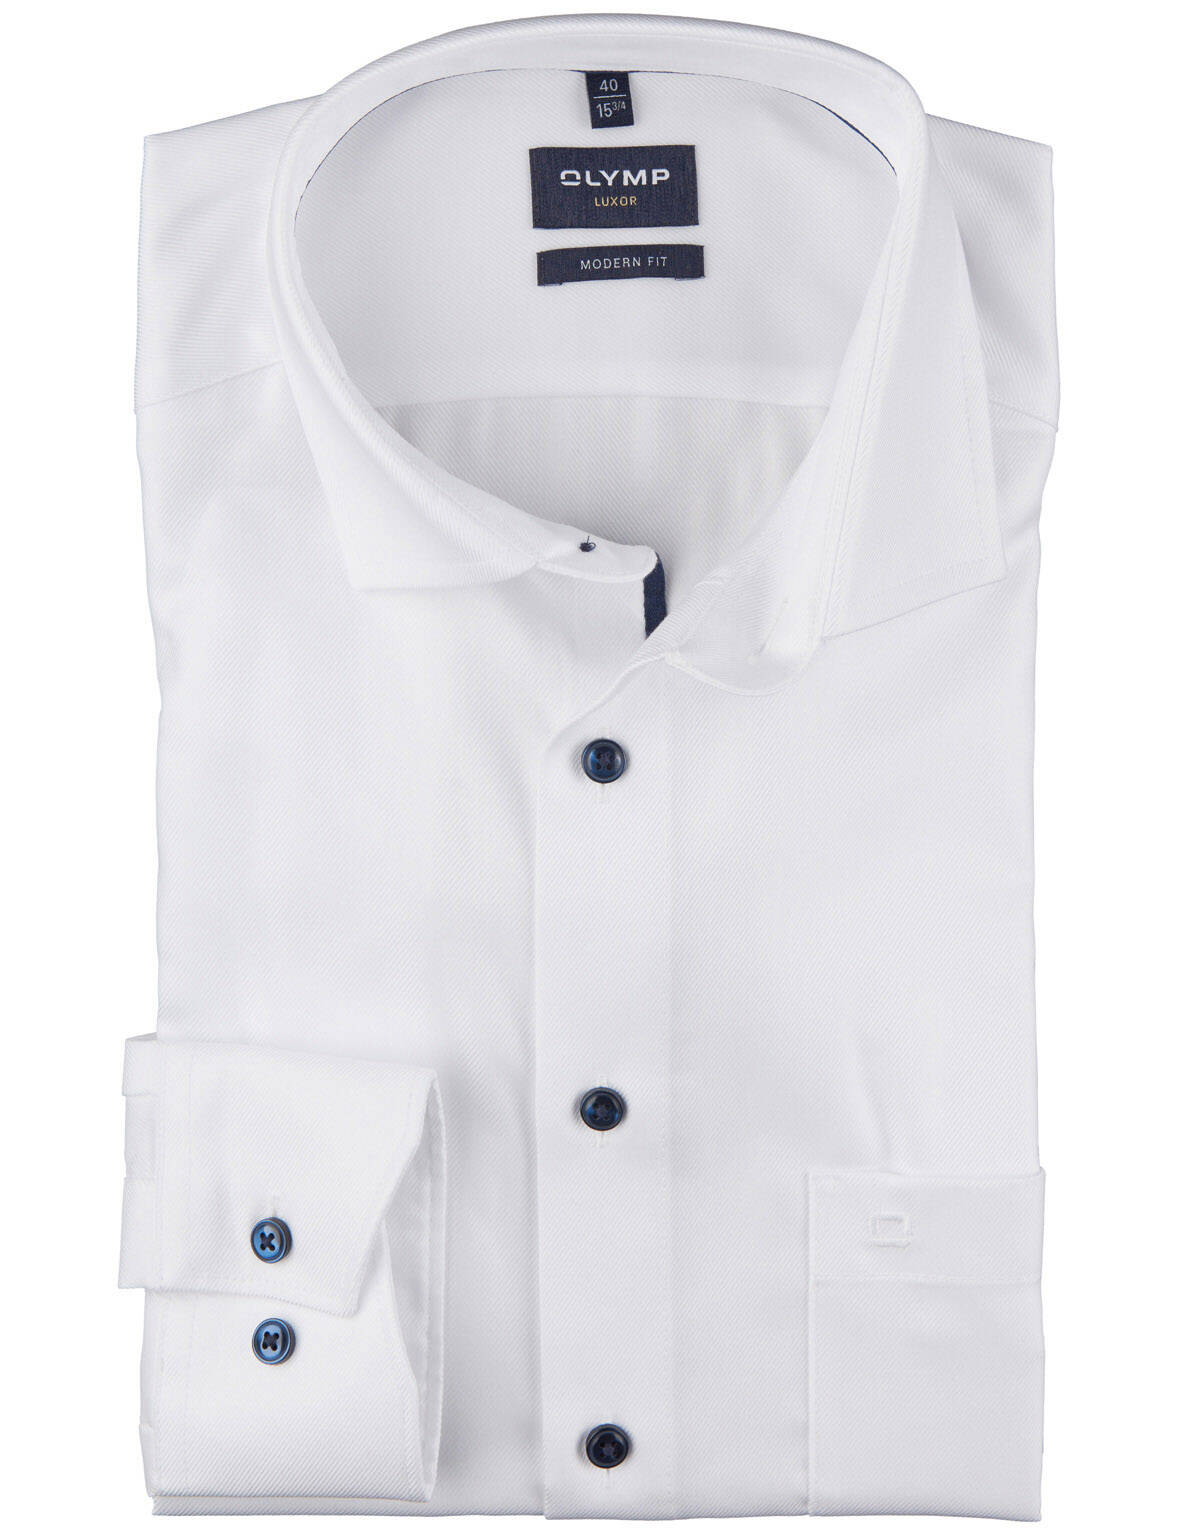 Рубашка мужская OLYMP Luxor Modern fit | купить в интернет-магазине Olymp-Men